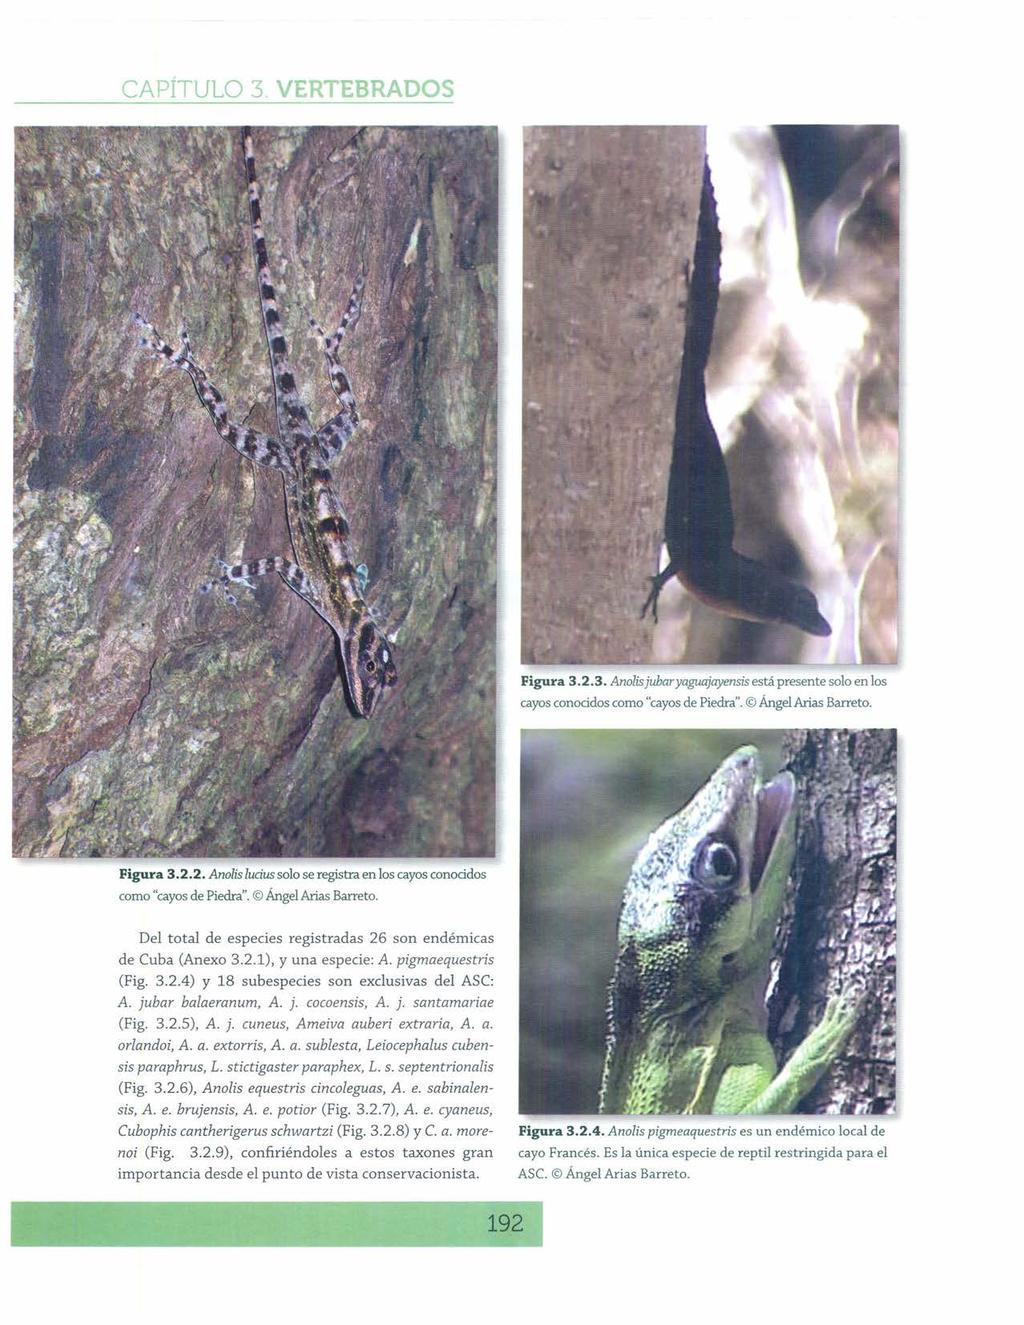 Figura 3.2.3. Anolisjubaryaguajayensis está presente solo en los cayos conocidos como "cayosde Piedra". Ángel Arias Barreta. Figura 3.2.2. Anolis ludus solo se registra en los cayos conocidos como "cayosde Piedra".